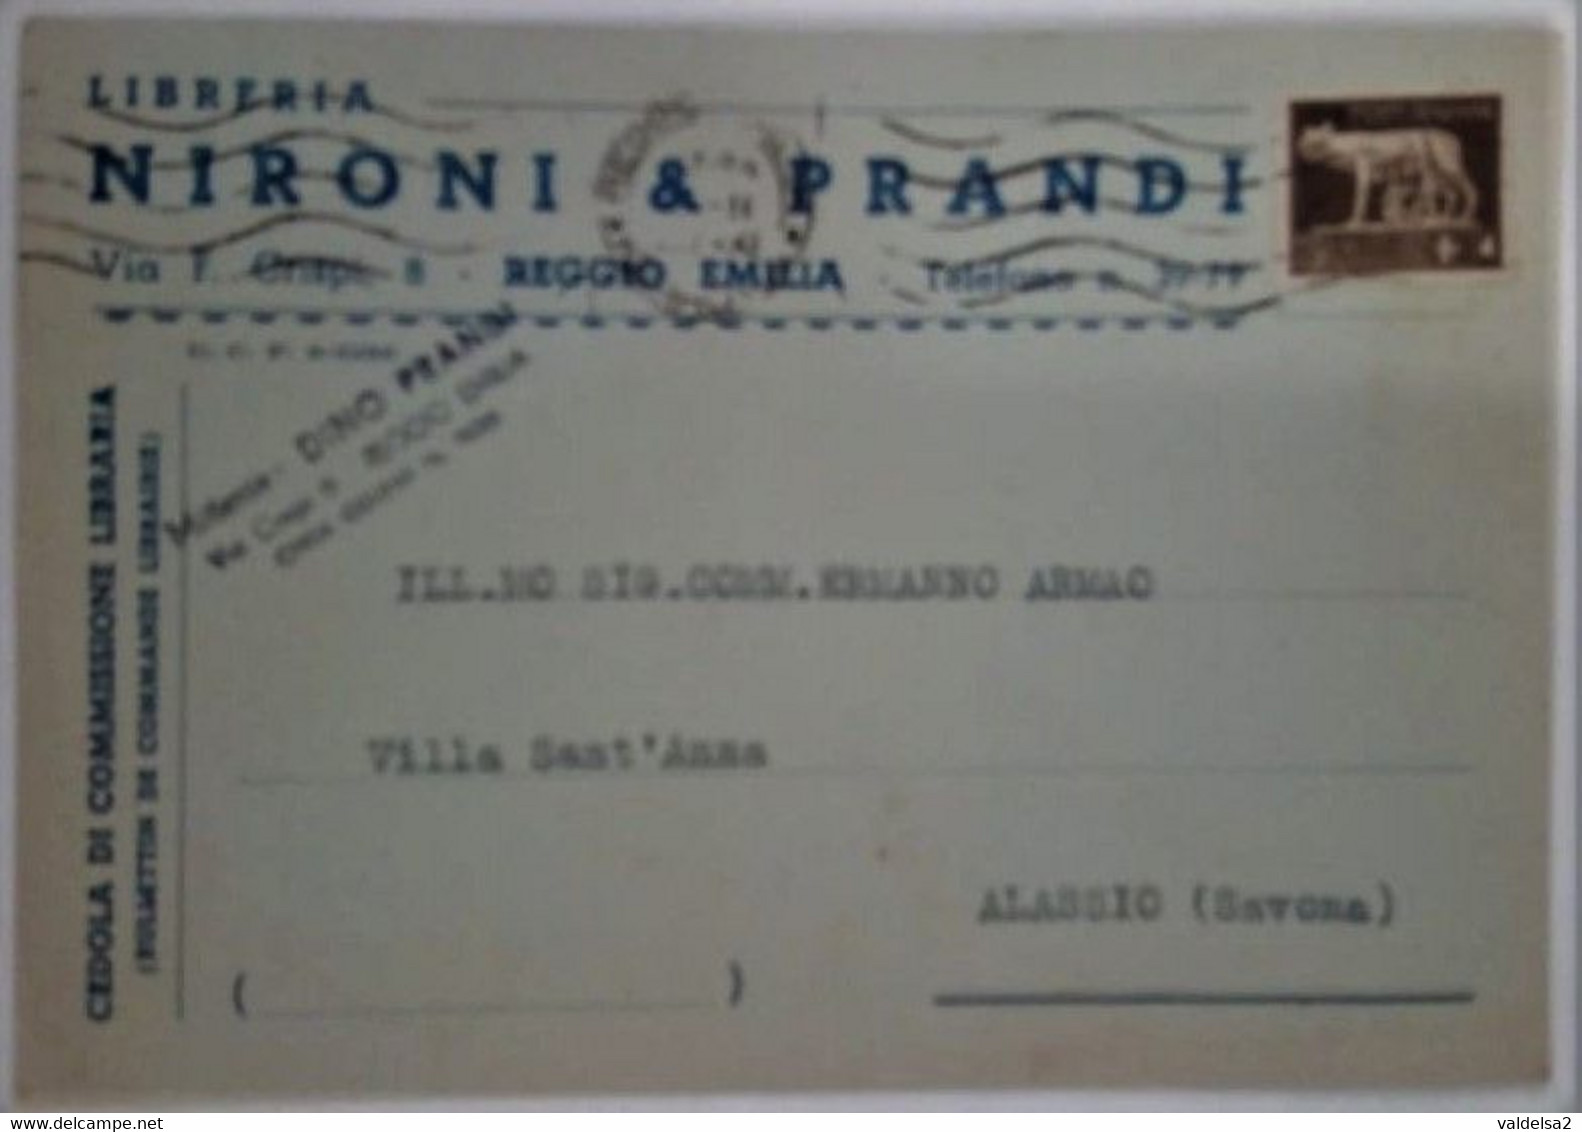 REGGIO EMILIA - CARTOLINA COMMERCIALE "LIBRERIA NIRONI & PRANDI" - VIA CRISPI - TARIFFA 5 CENT. CEDOLA LIBRARIA -1942 - Reggio Emilia